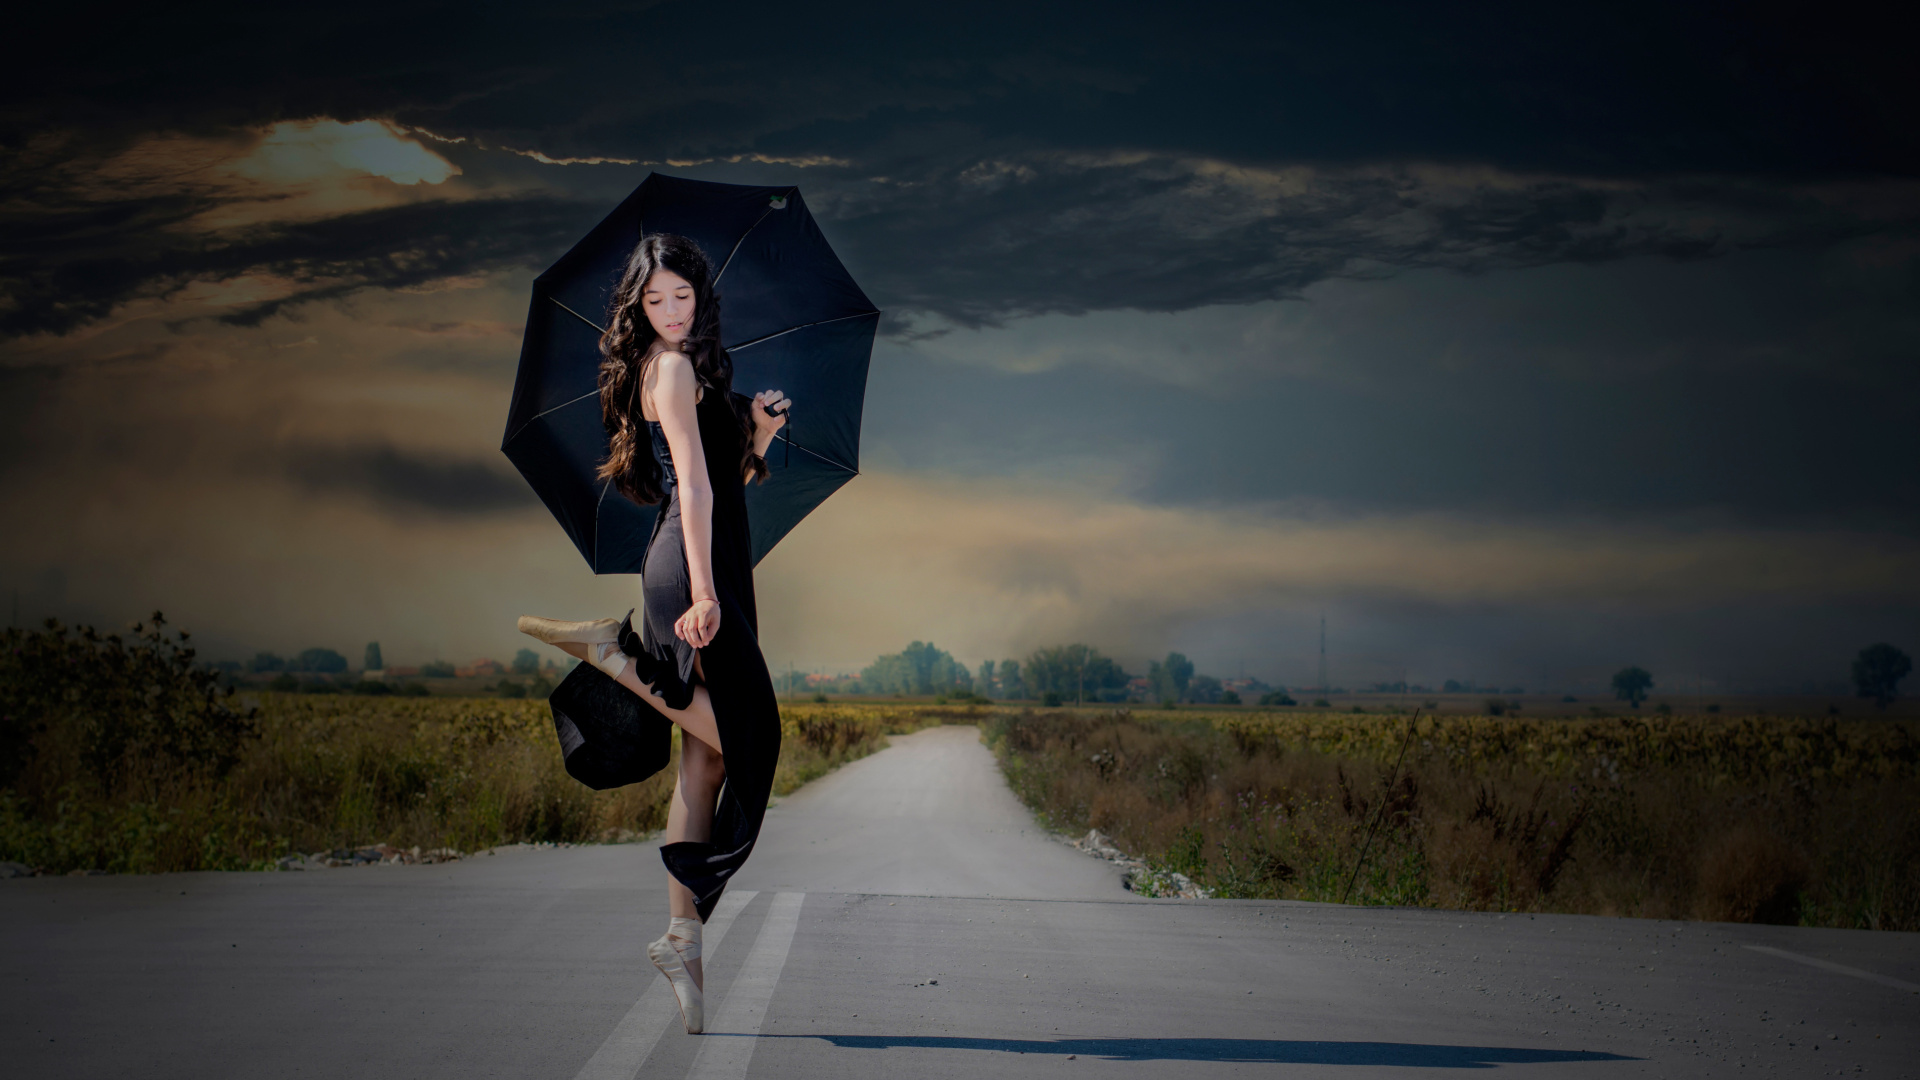 Das Ballerina with black umbrella Wallpaper 1920x1080